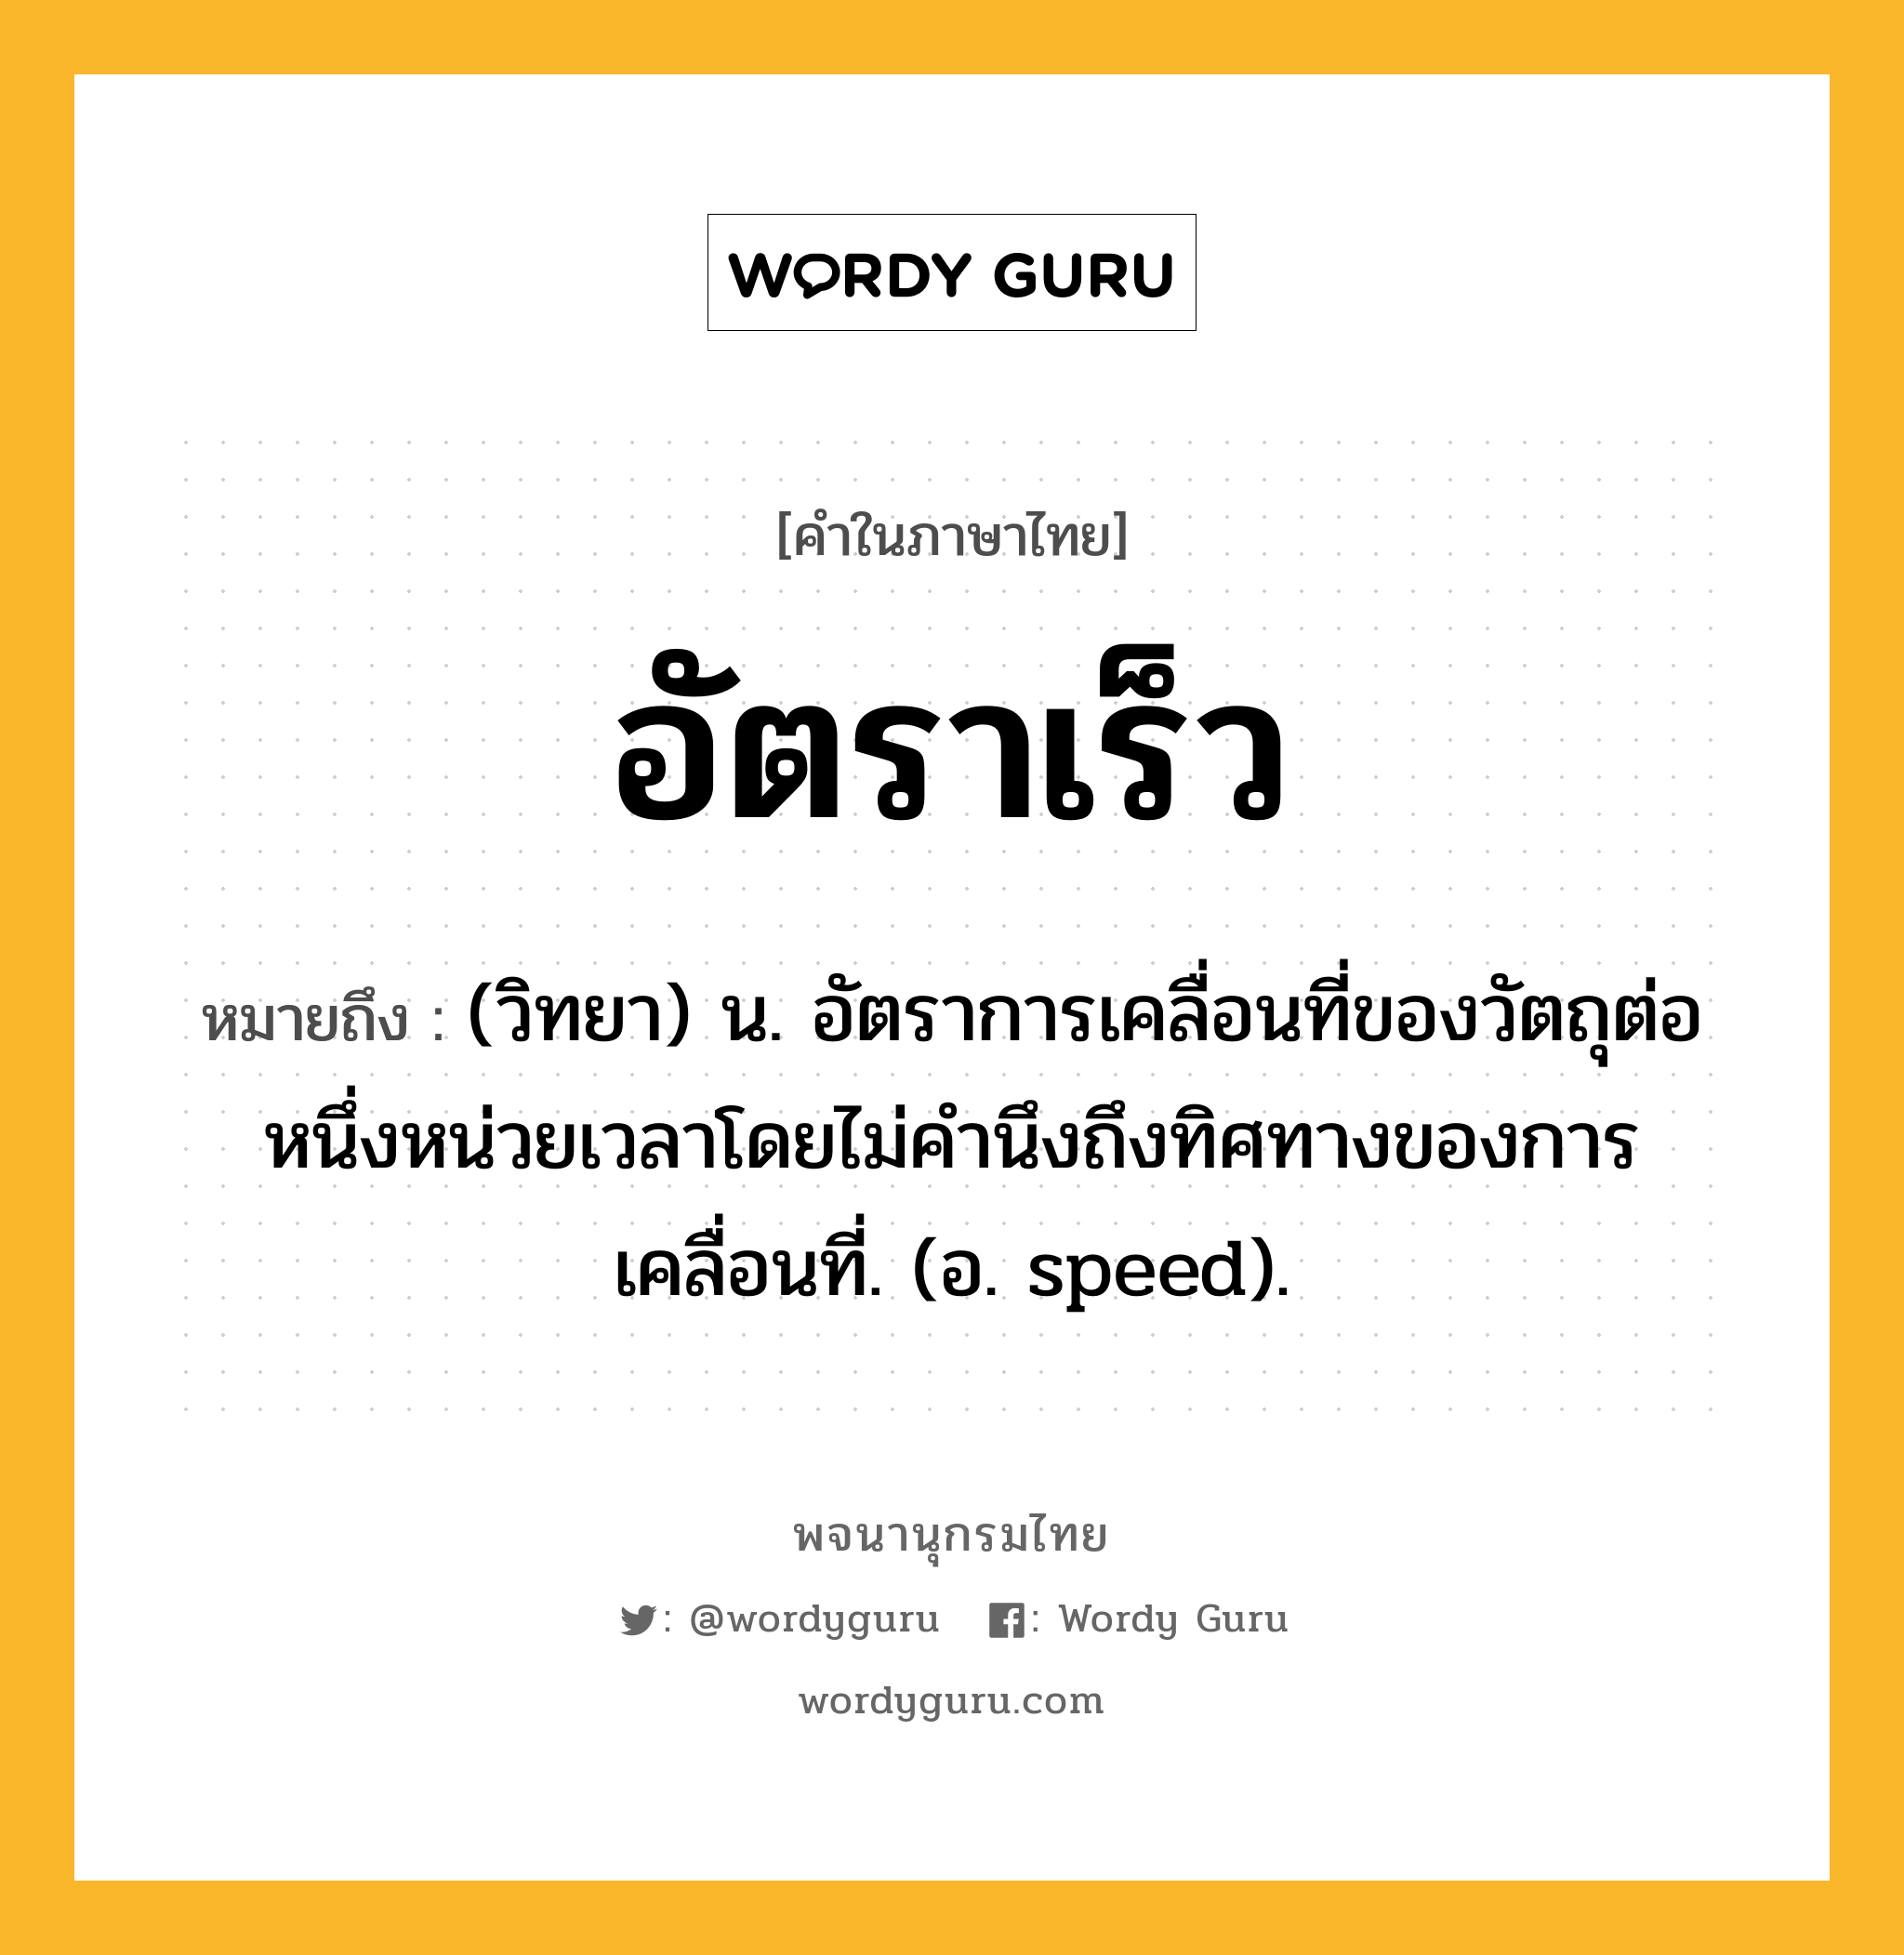 อัตราเร็ว หมายถึงอะไร?, คำในภาษาไทย อัตราเร็ว หมายถึง (วิทยา) น. อัตราการเคลื่อนที่ของวัตถุต่อหนึ่งหน่วยเวลาโดยไม่คํานึงถึงทิศทางของการเคลื่อนที่. (อ. speed).